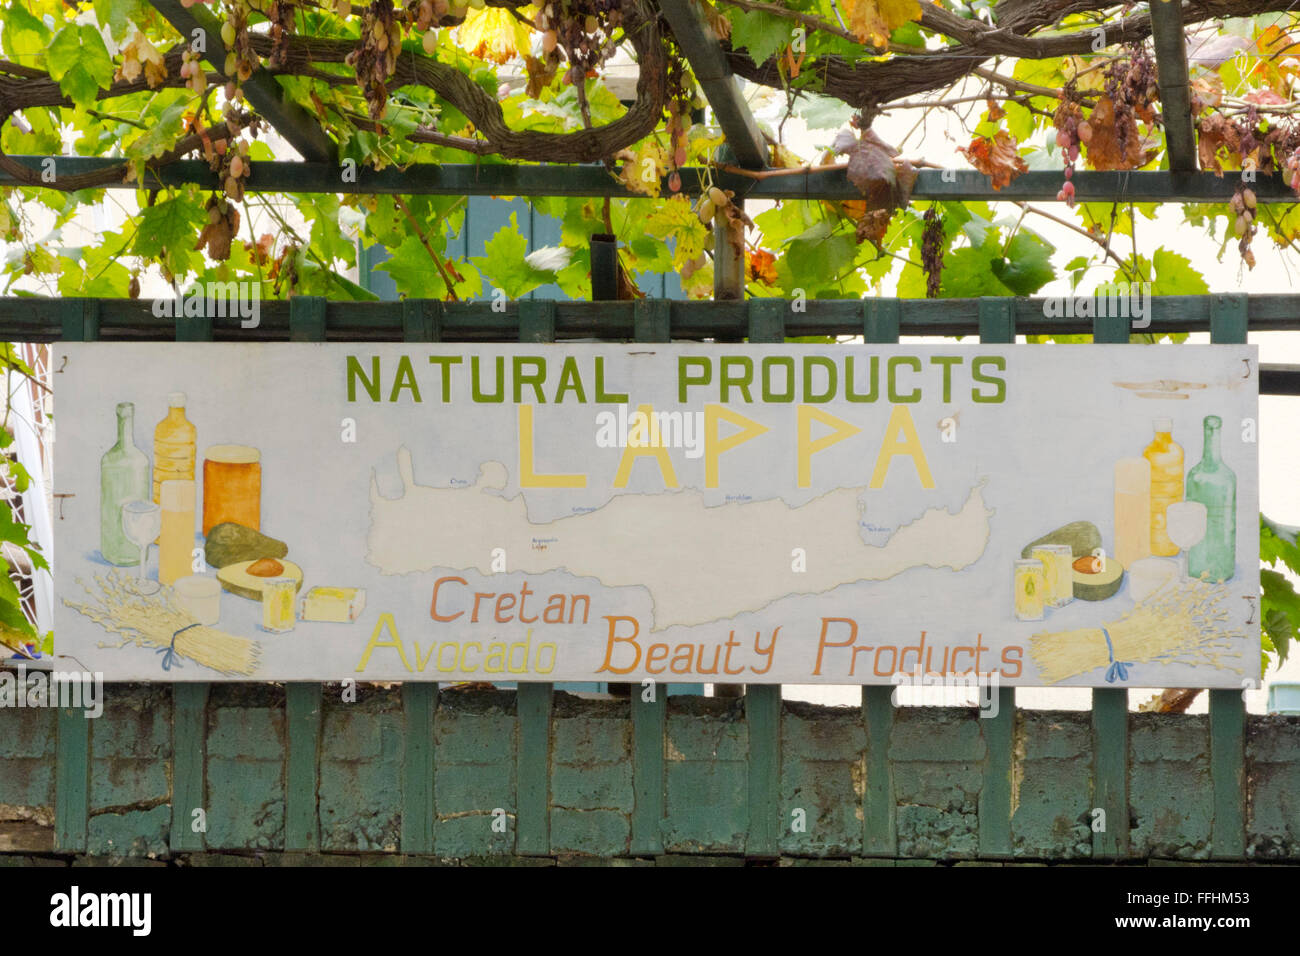 Griechenland, Kreta, Argiroupoli, Lappa Avocado verkauft Kosmetikprodukte aus Avocado die selbst angebaut werden. Stock Photo